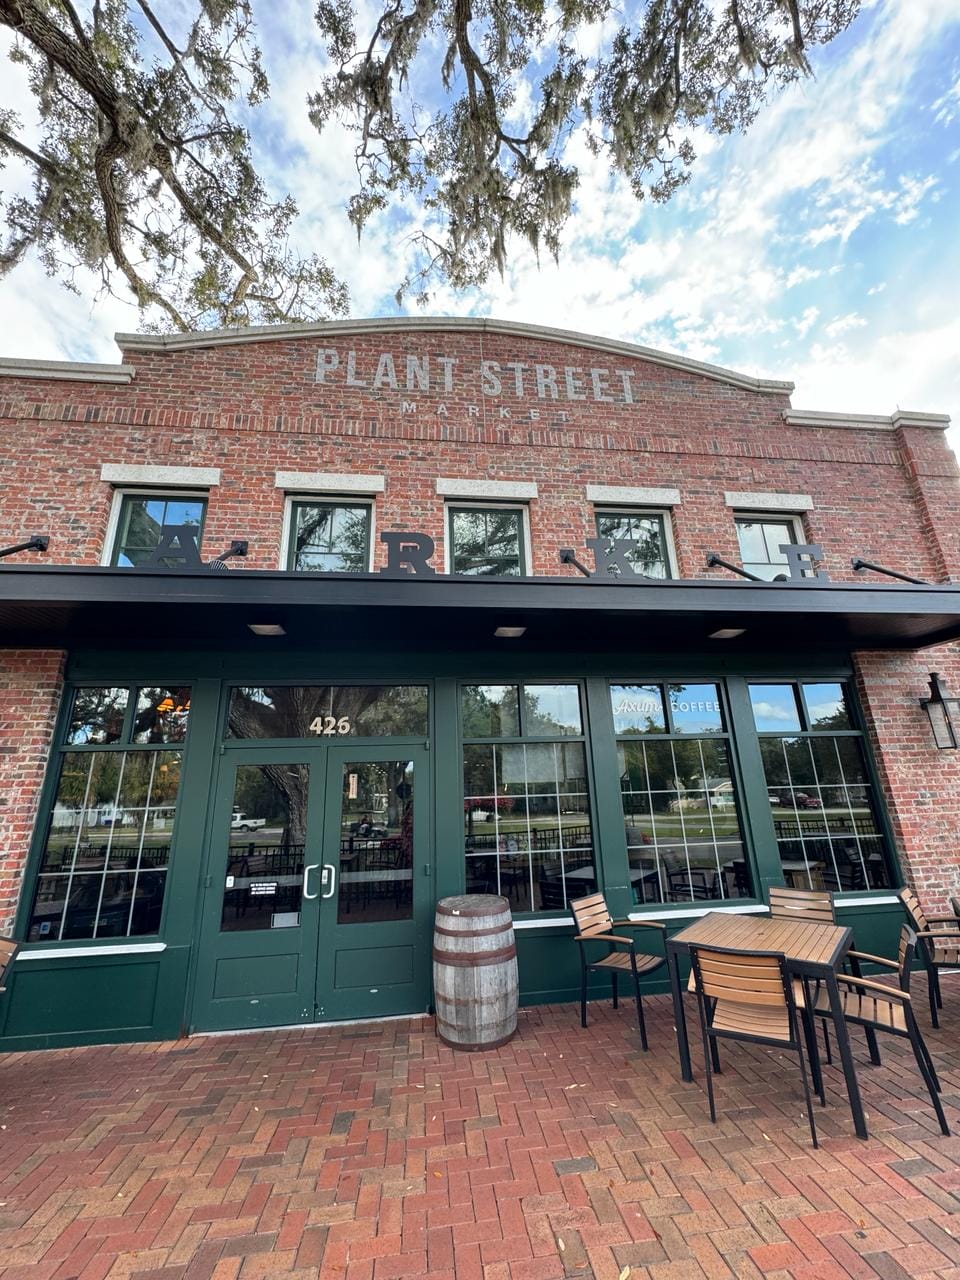 Plant Street Market: descolado mercado gastronômico em Orlando